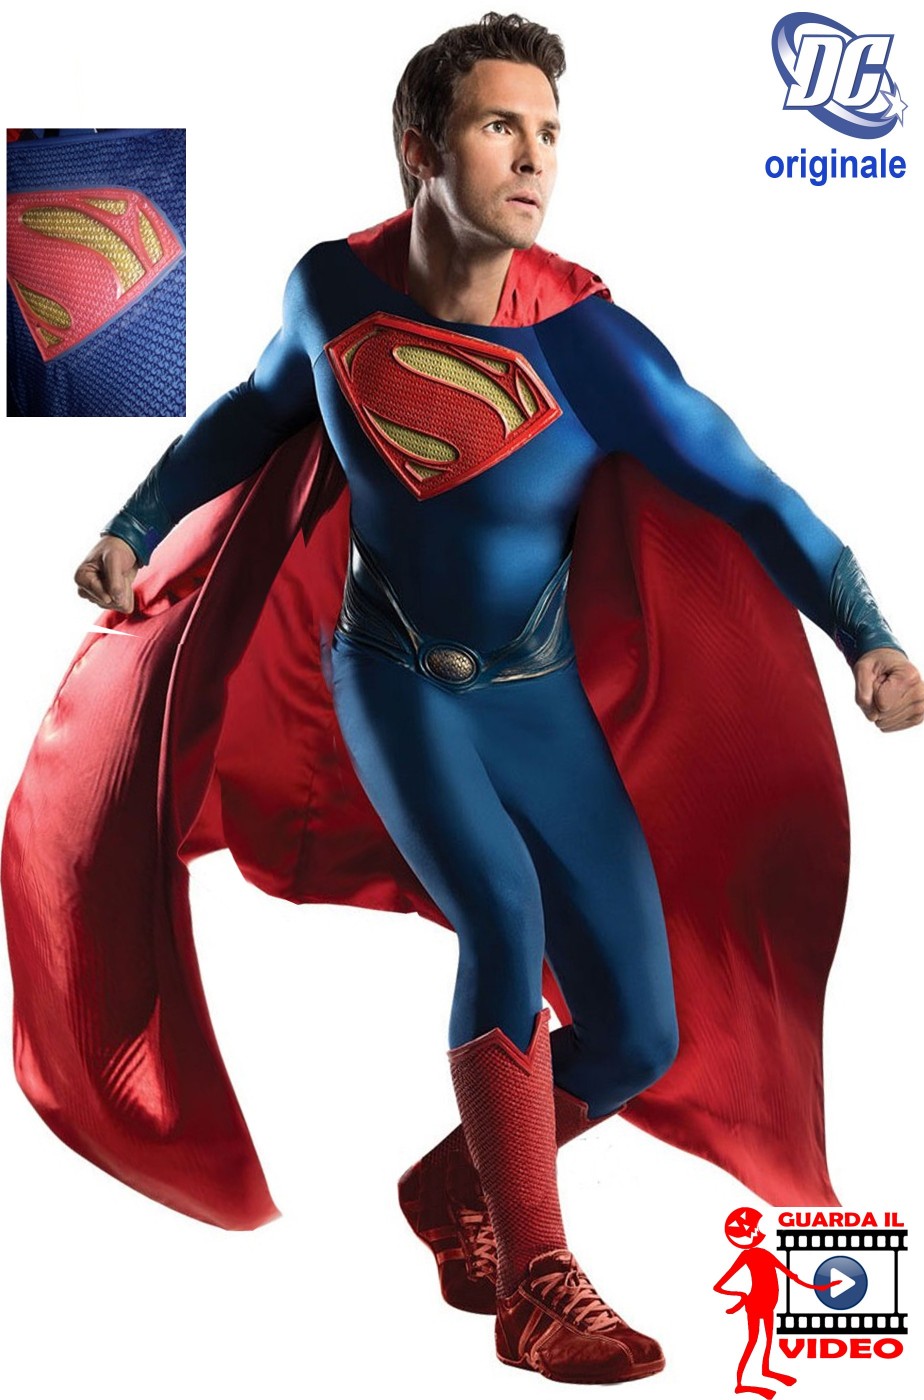 Costume Superman come quello del film. Stampa serigrafata.